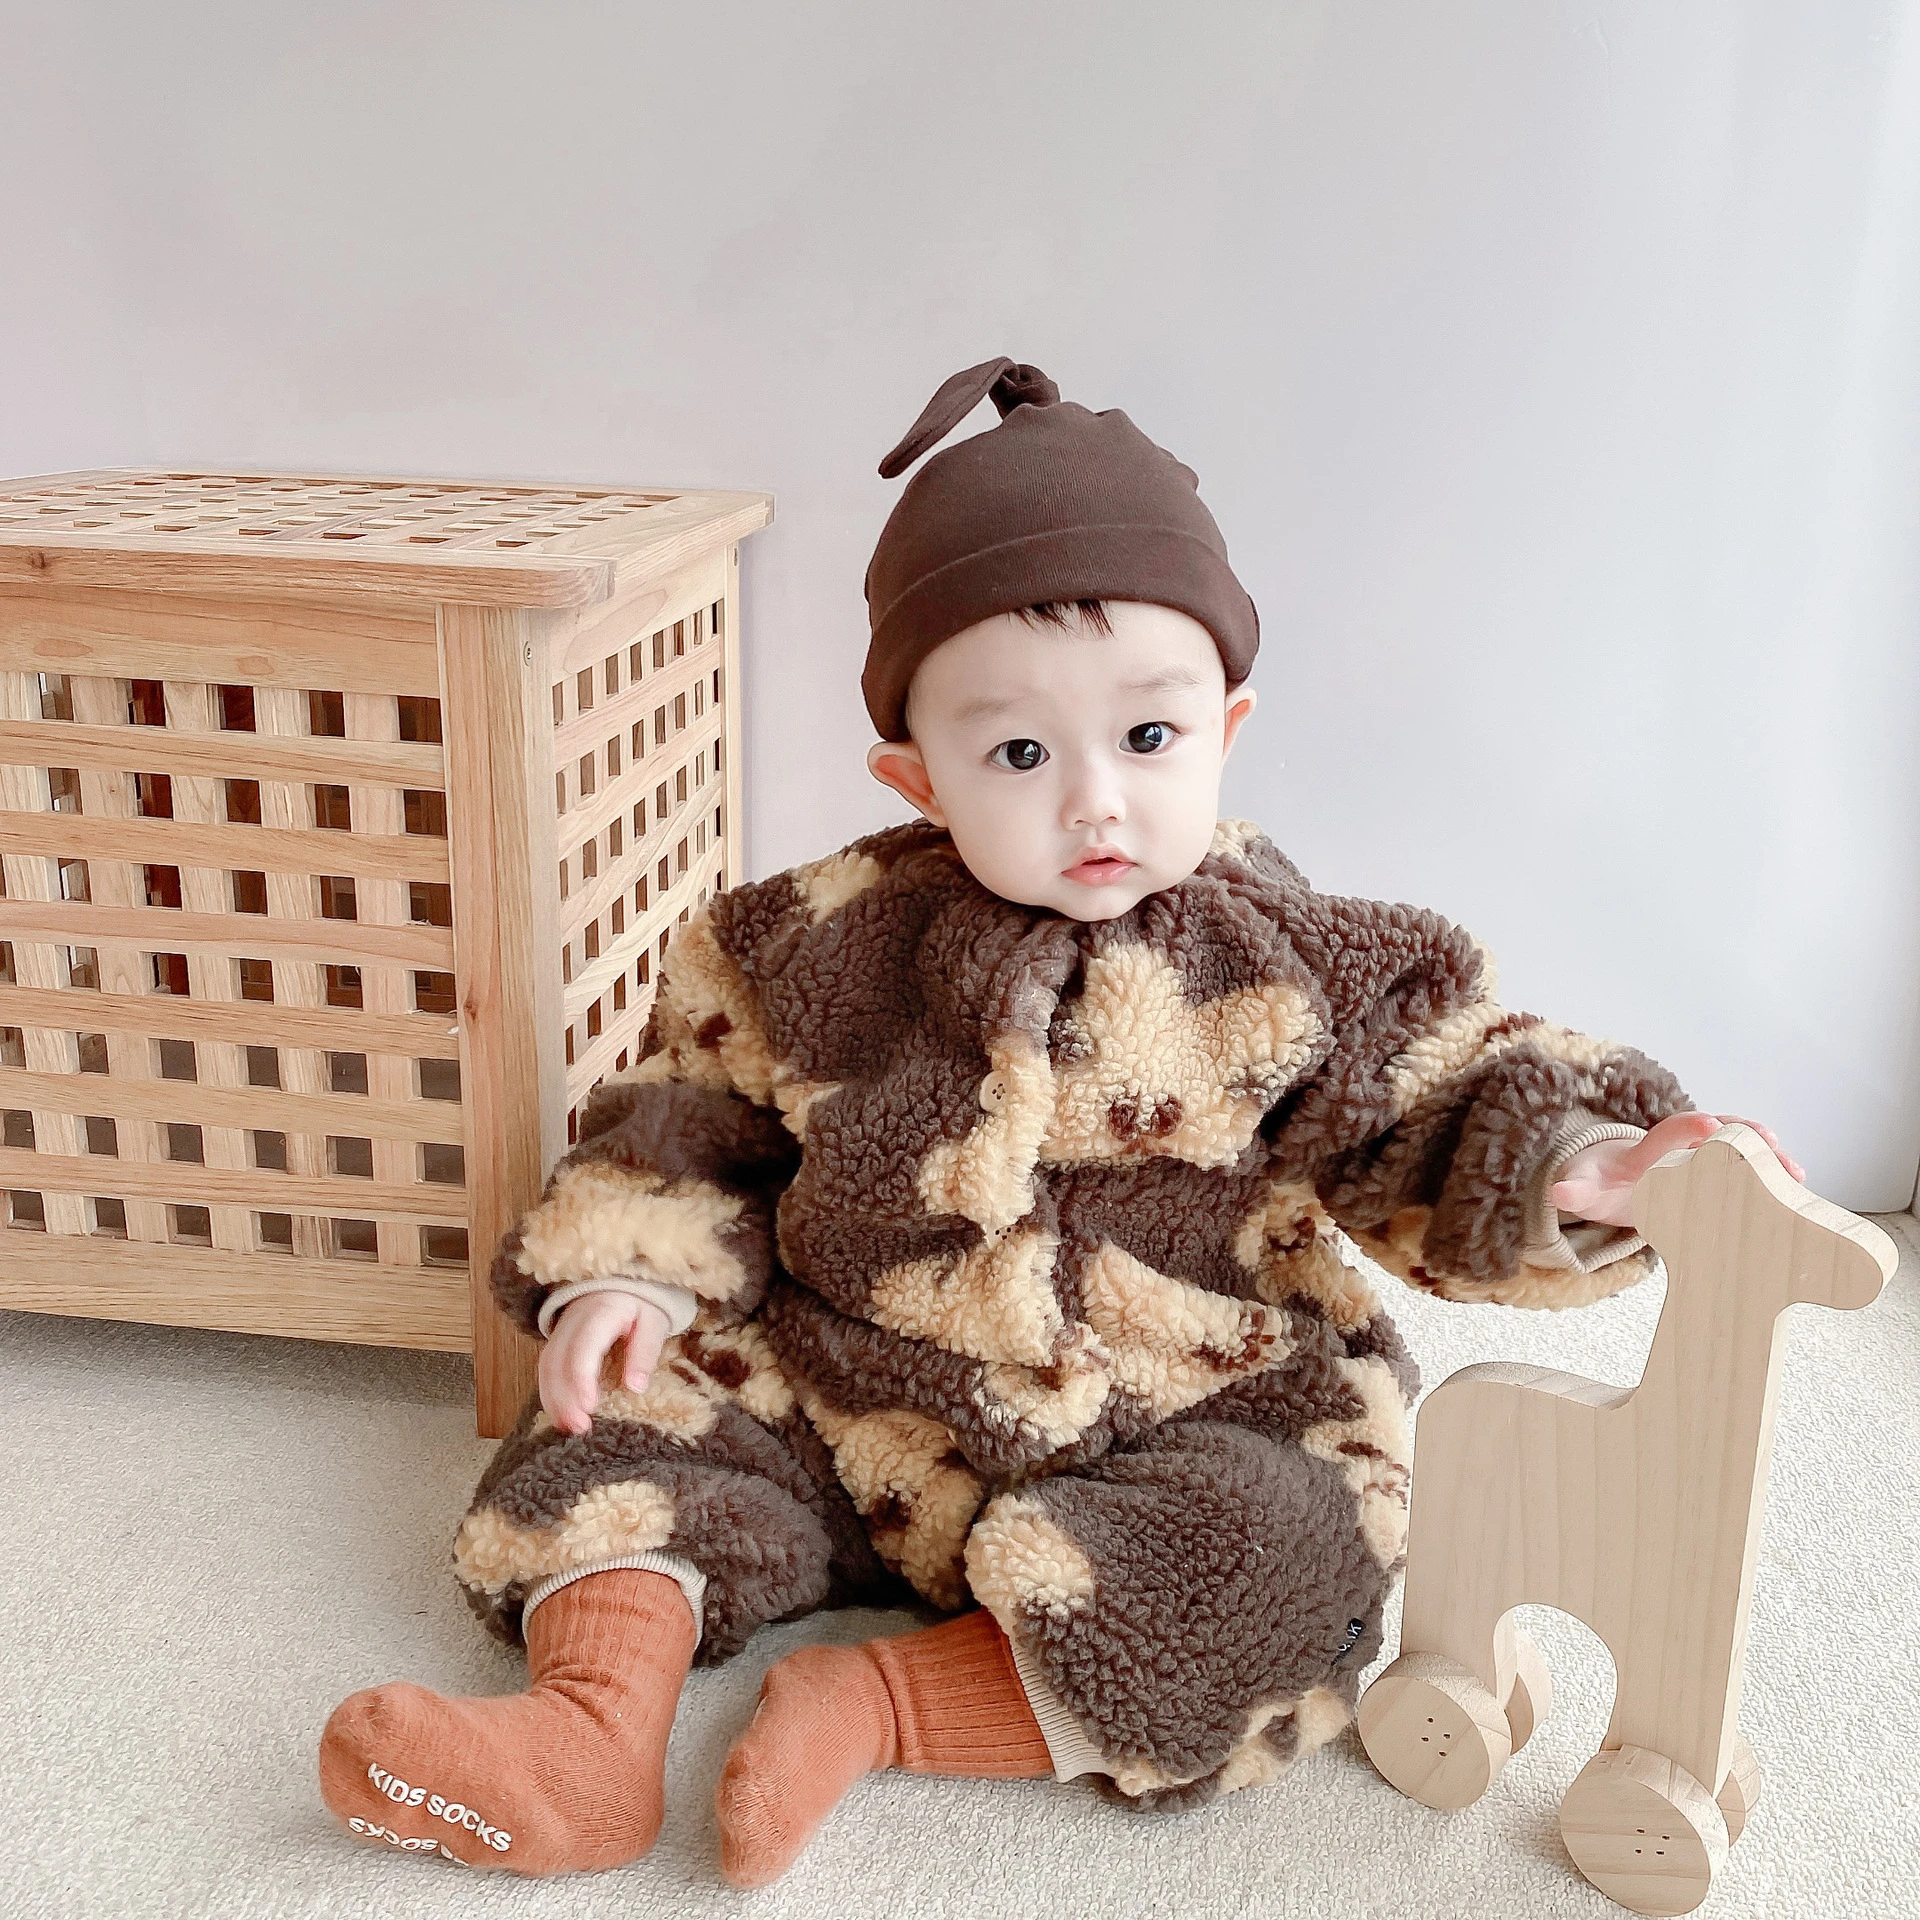 Ropa de invierno para bebé nacido, Pelele de bebé de dibujos animados de animales, mono cálido lana suave, pijama ropa bebe ropa navidad bebé|Peleles| -